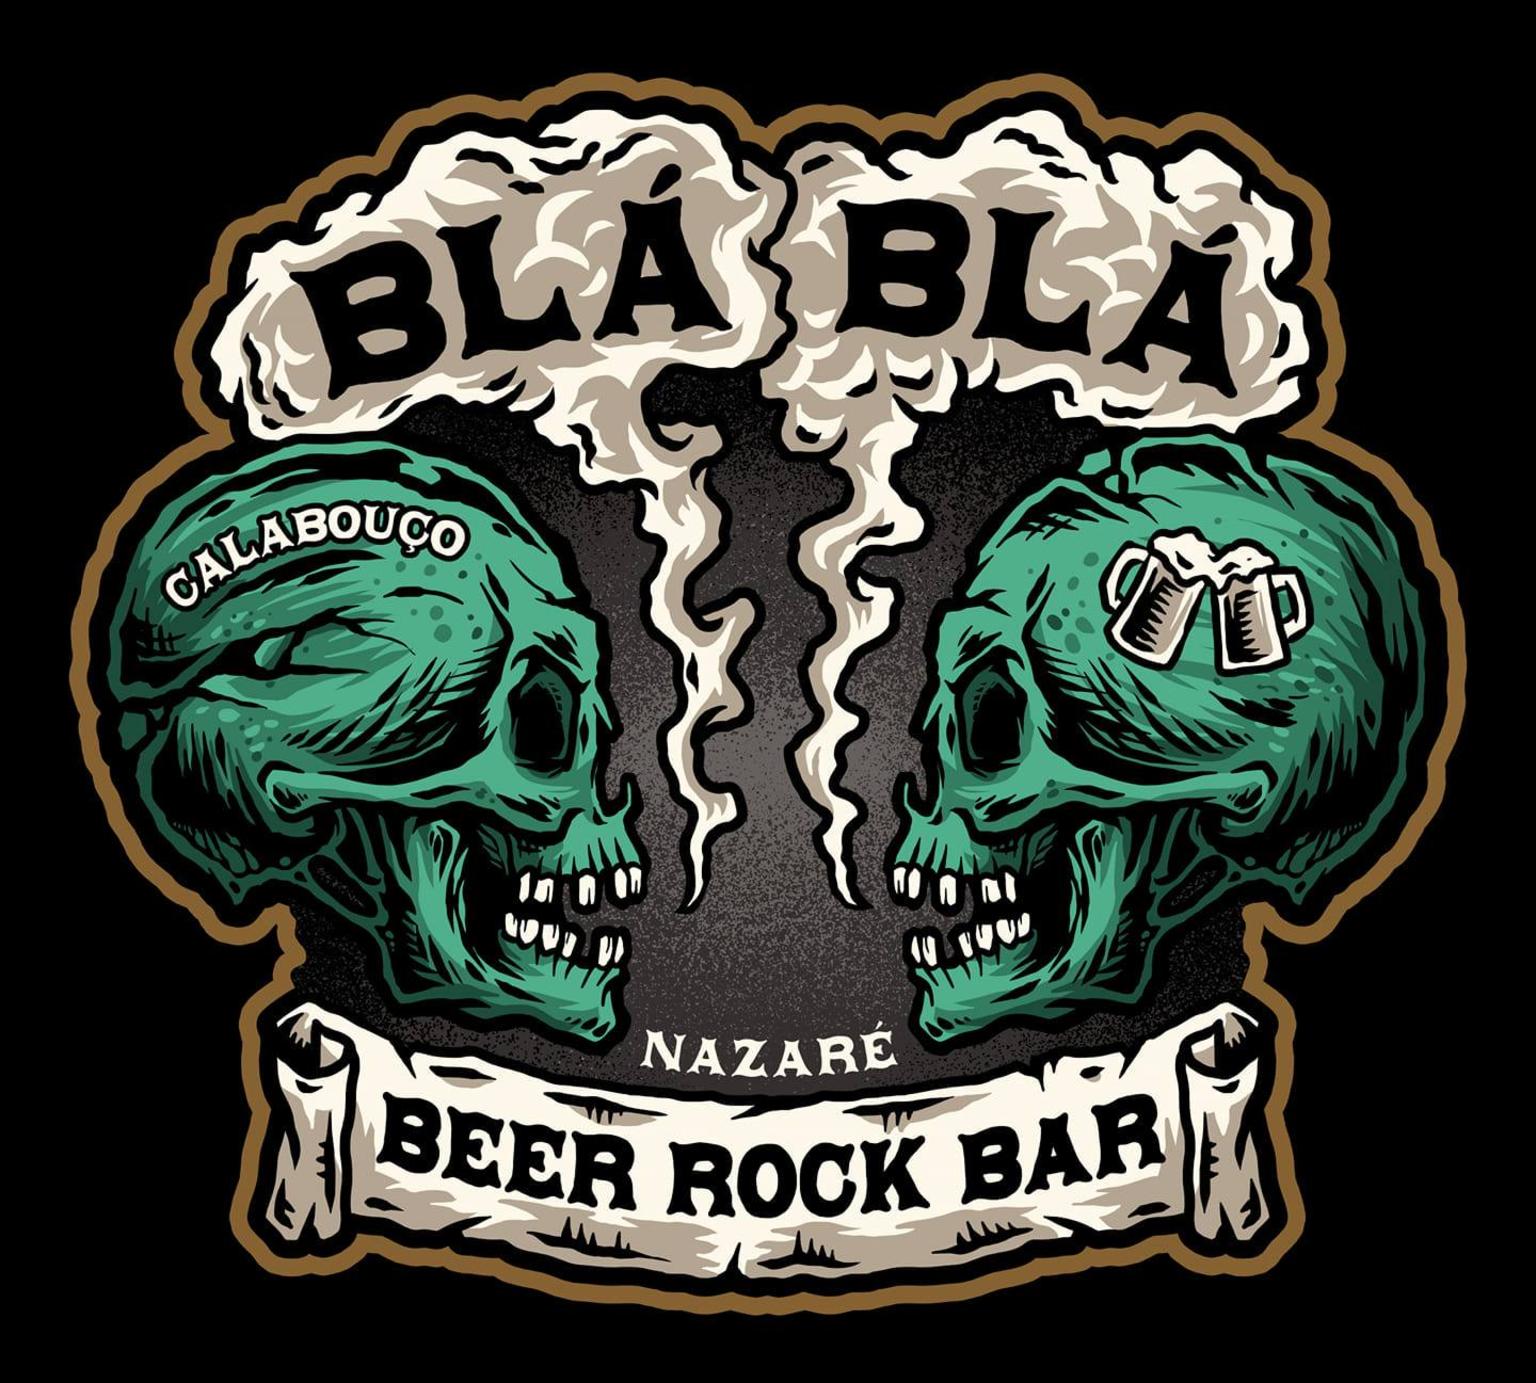 O Calabouço - Bla Bla bar